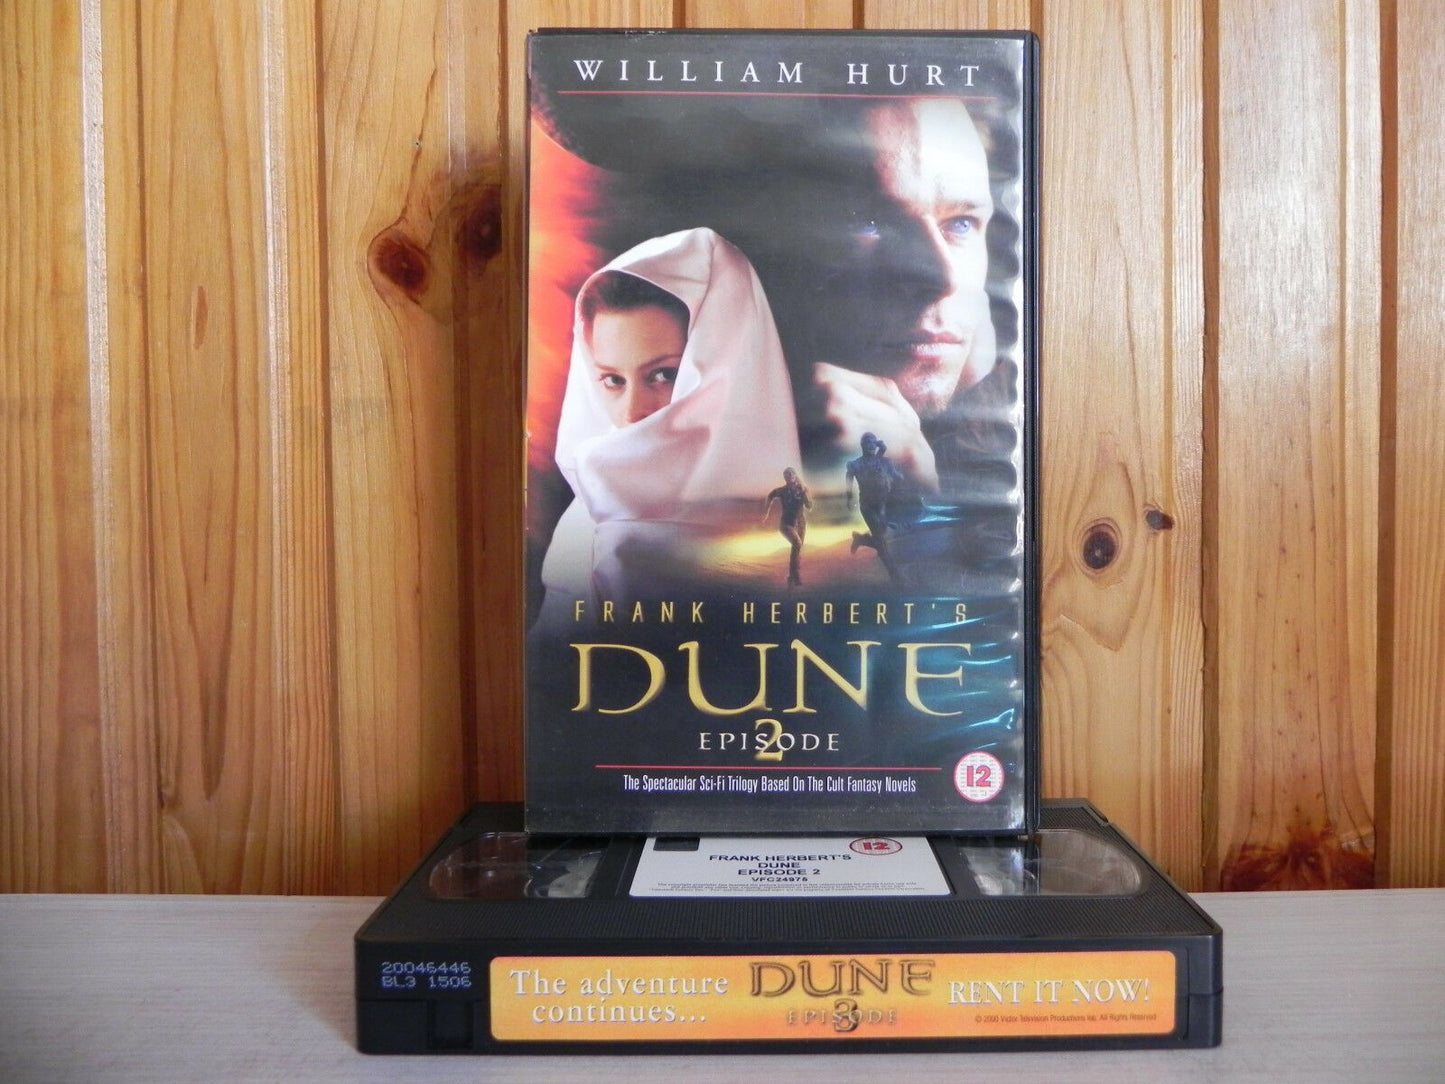 Dune - Episode 2 - 20th Century - Spectacular Sci-Fi Saga - William Hurt - VHS-